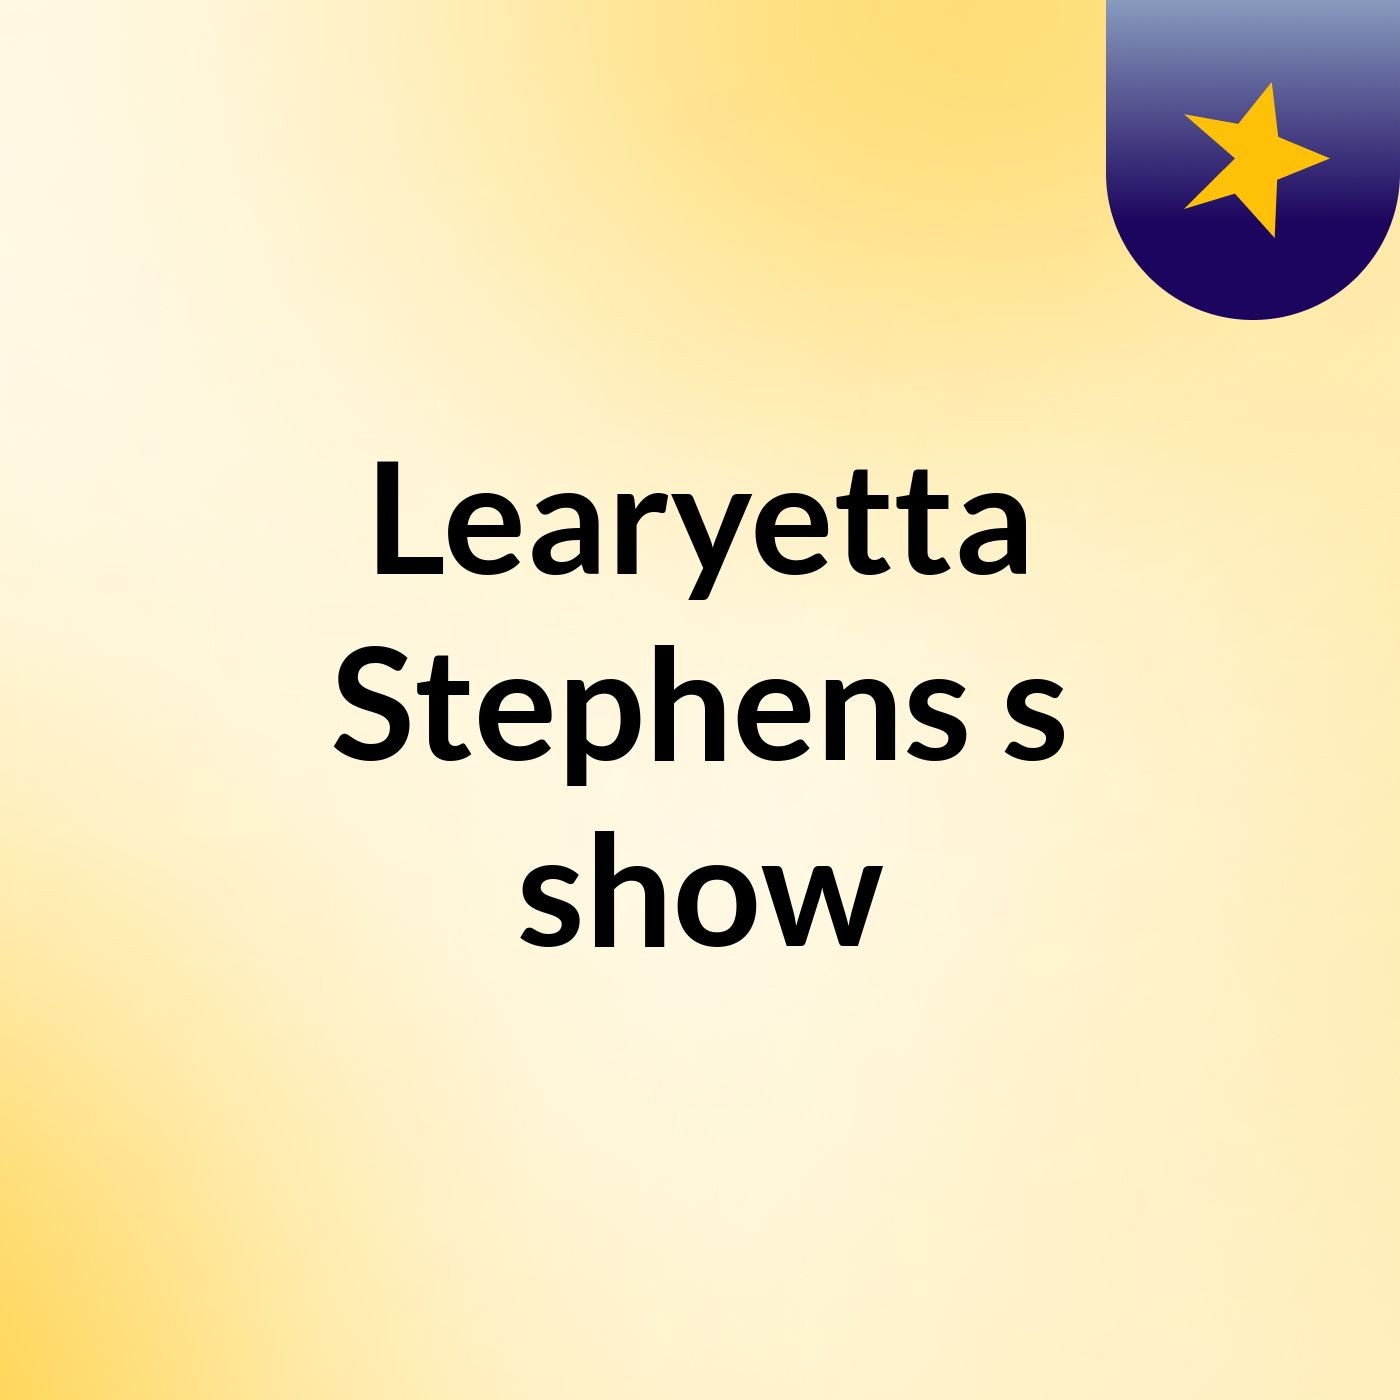 Learyetta Stephens's show